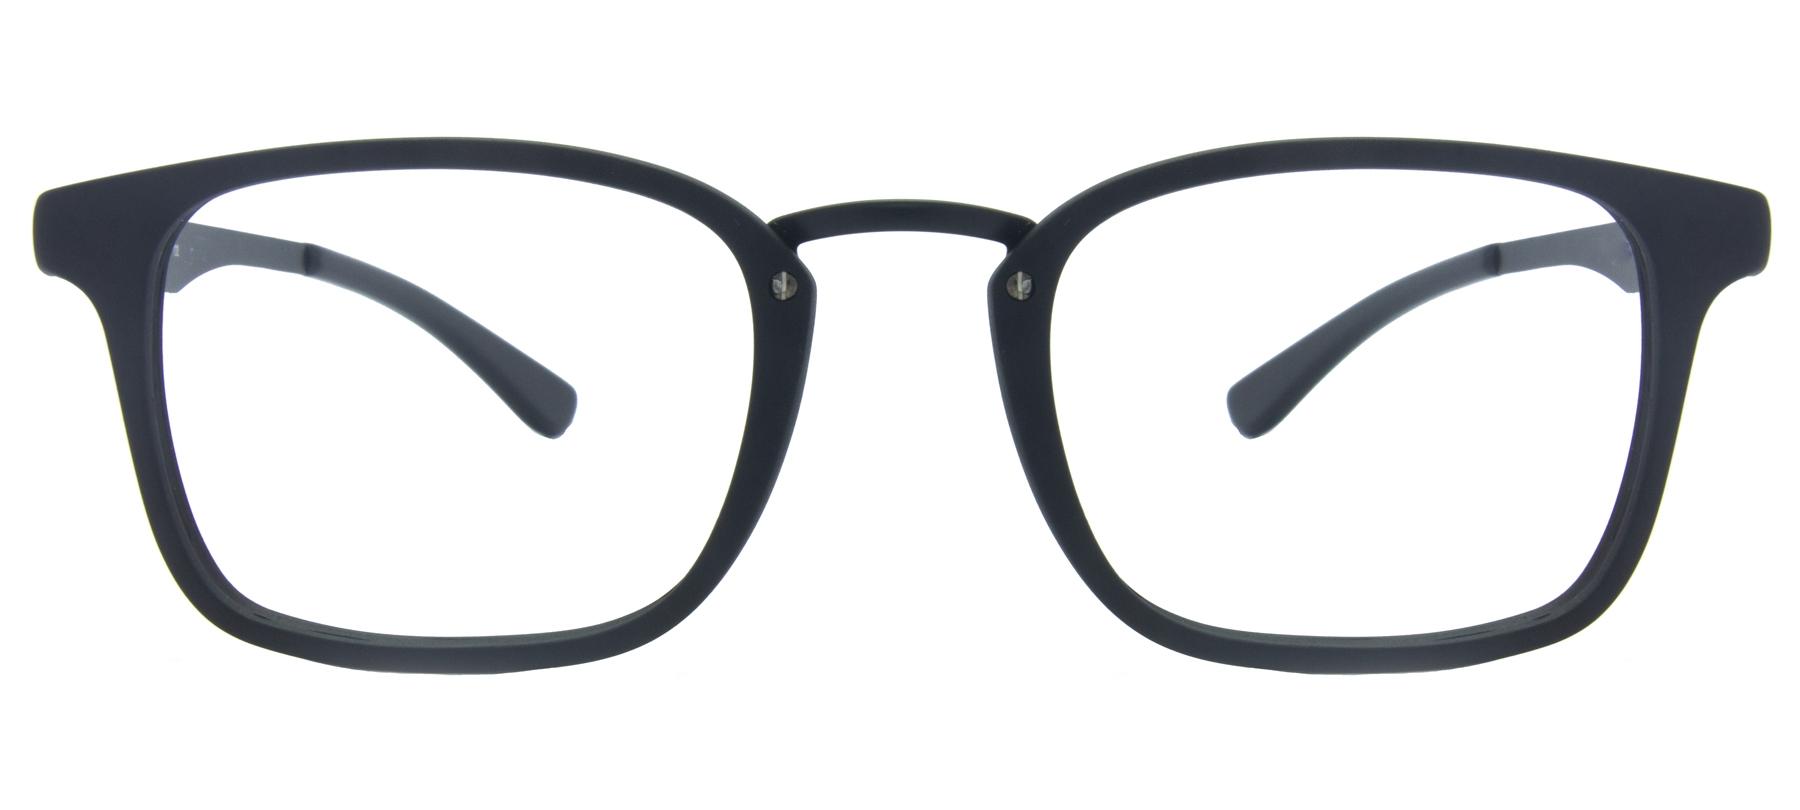 Óculos de Grau HB93120